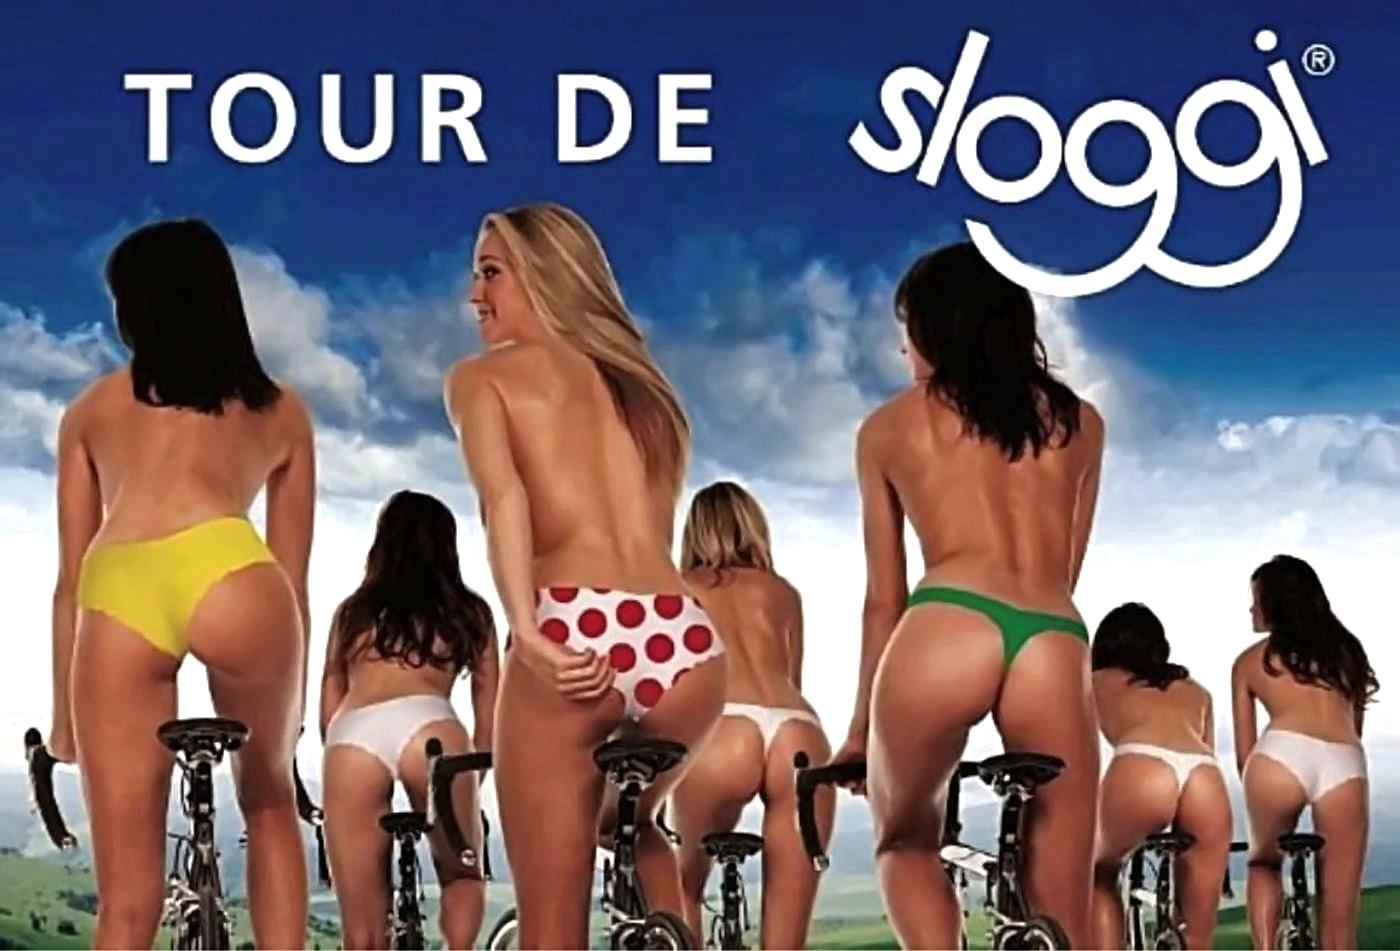 Tour de (France) sloggi! :-)